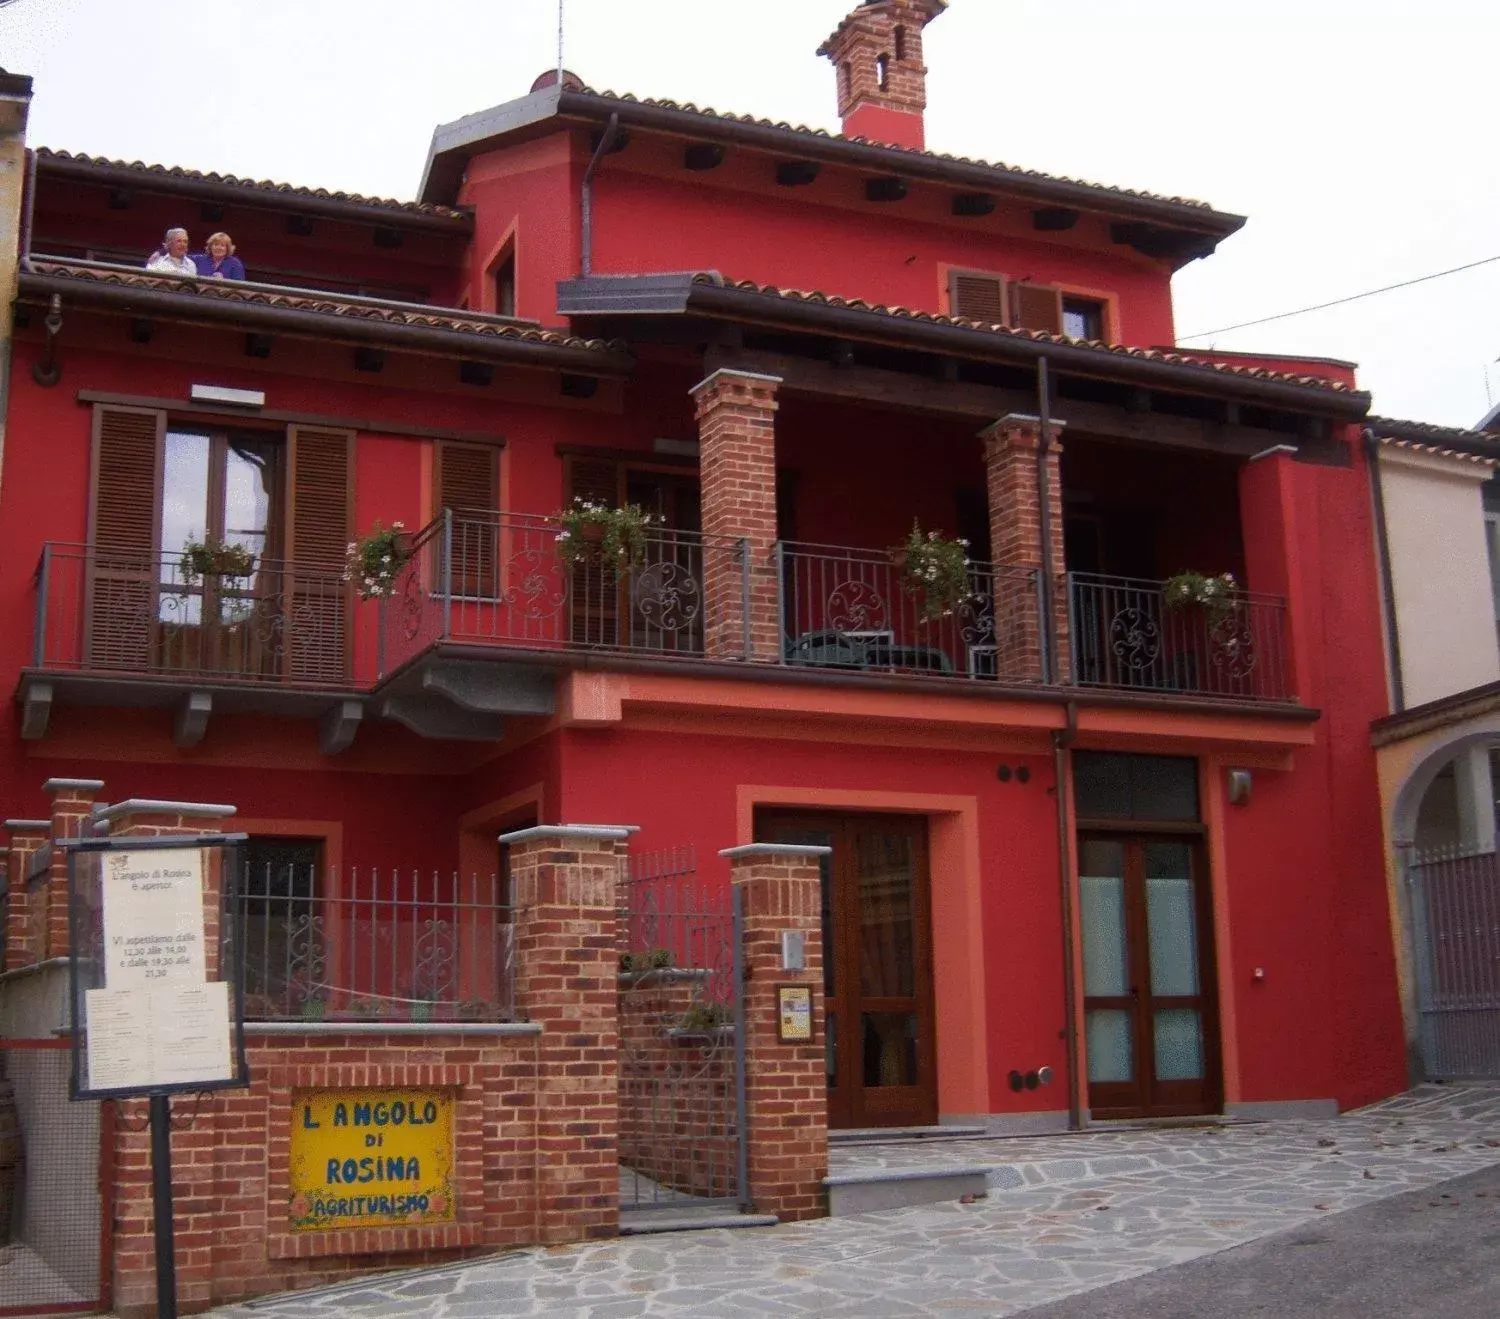 Property Building in L'Angolo di Rosina